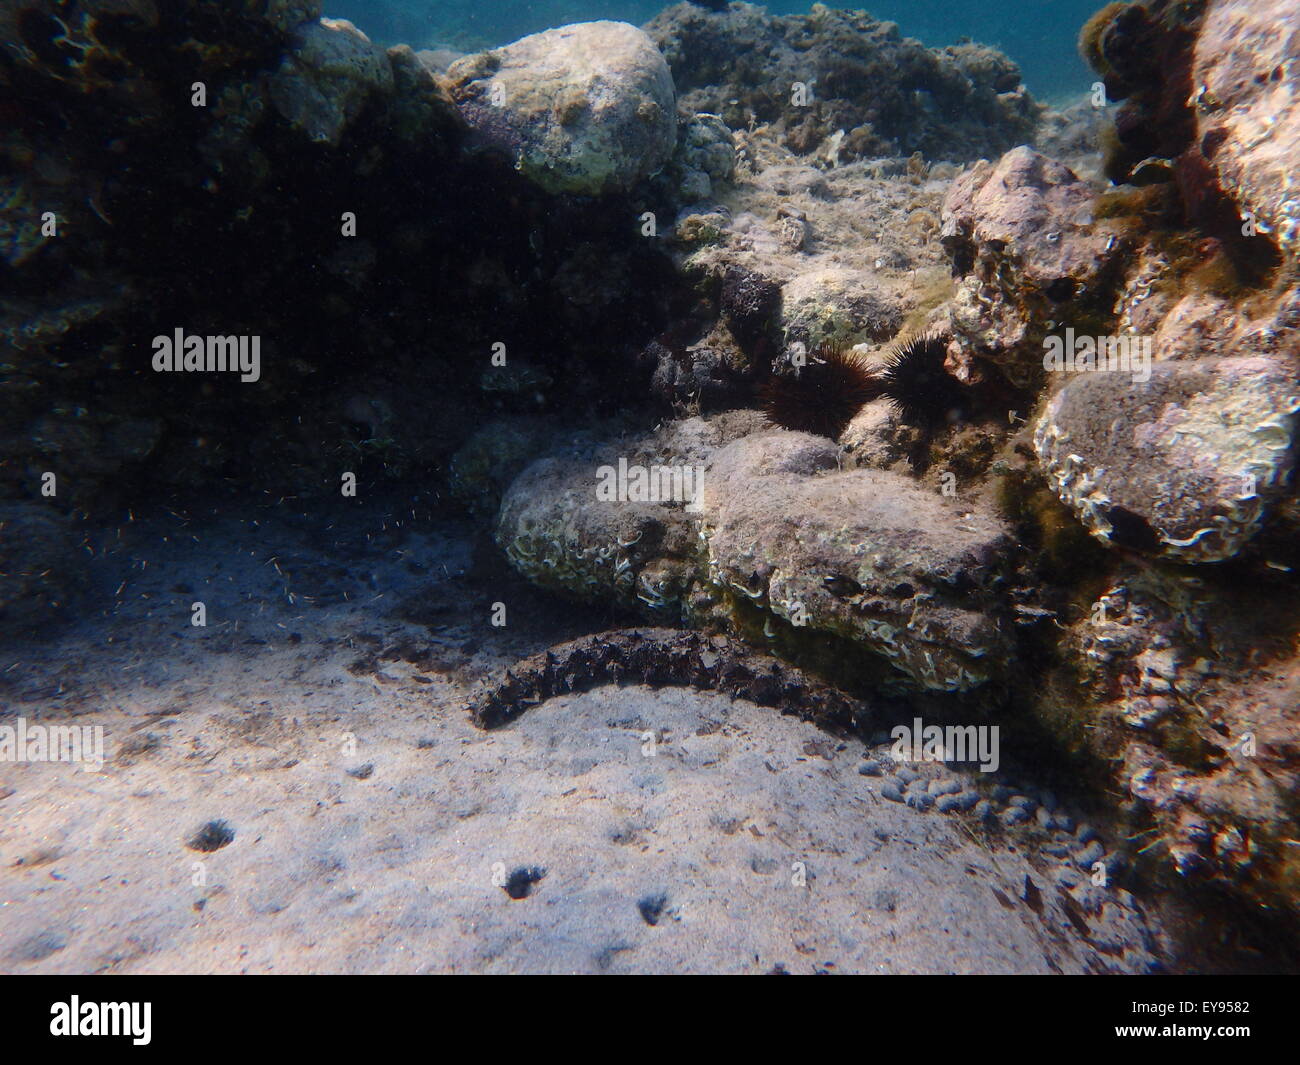 Leben im Meer, Muscheln, Tiere und Fische an der Unterseite des Meeres, Unterwasser-Fotografie. Stockfoto